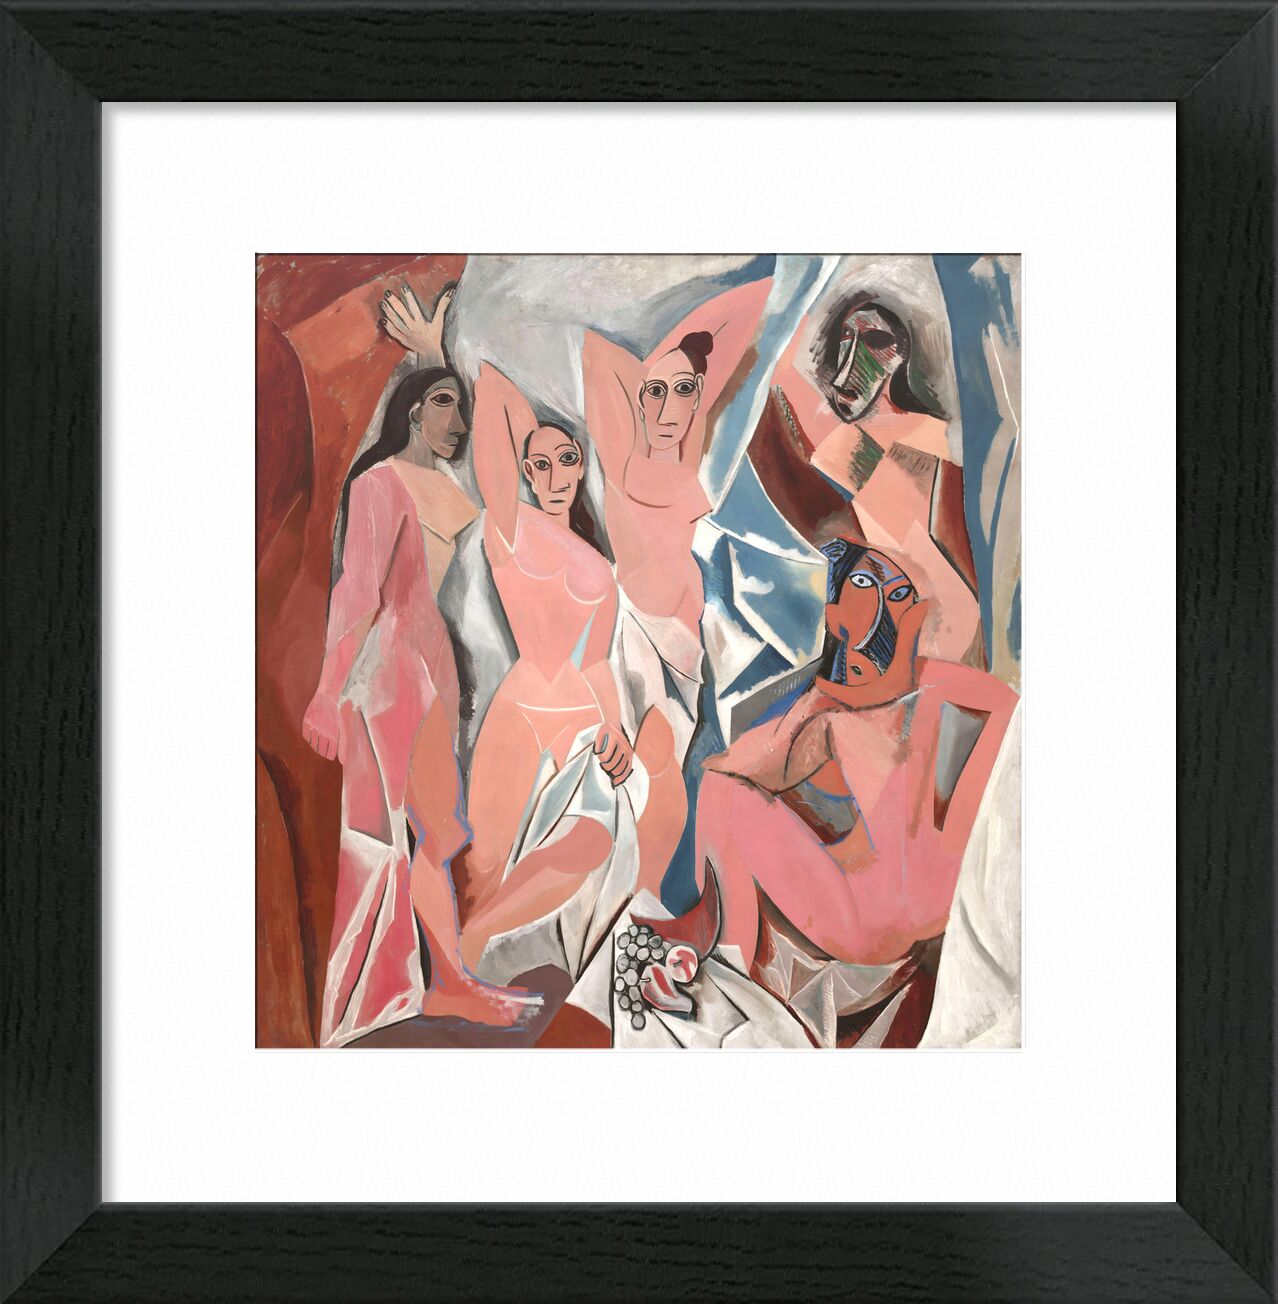 The Ladies of Avignon von Bildende Kunst, Prodi Art, Frankreich, Zeichnung, Malerei, abstrakt, PABLO PICASSO, Avignon, Frauen, Tafel